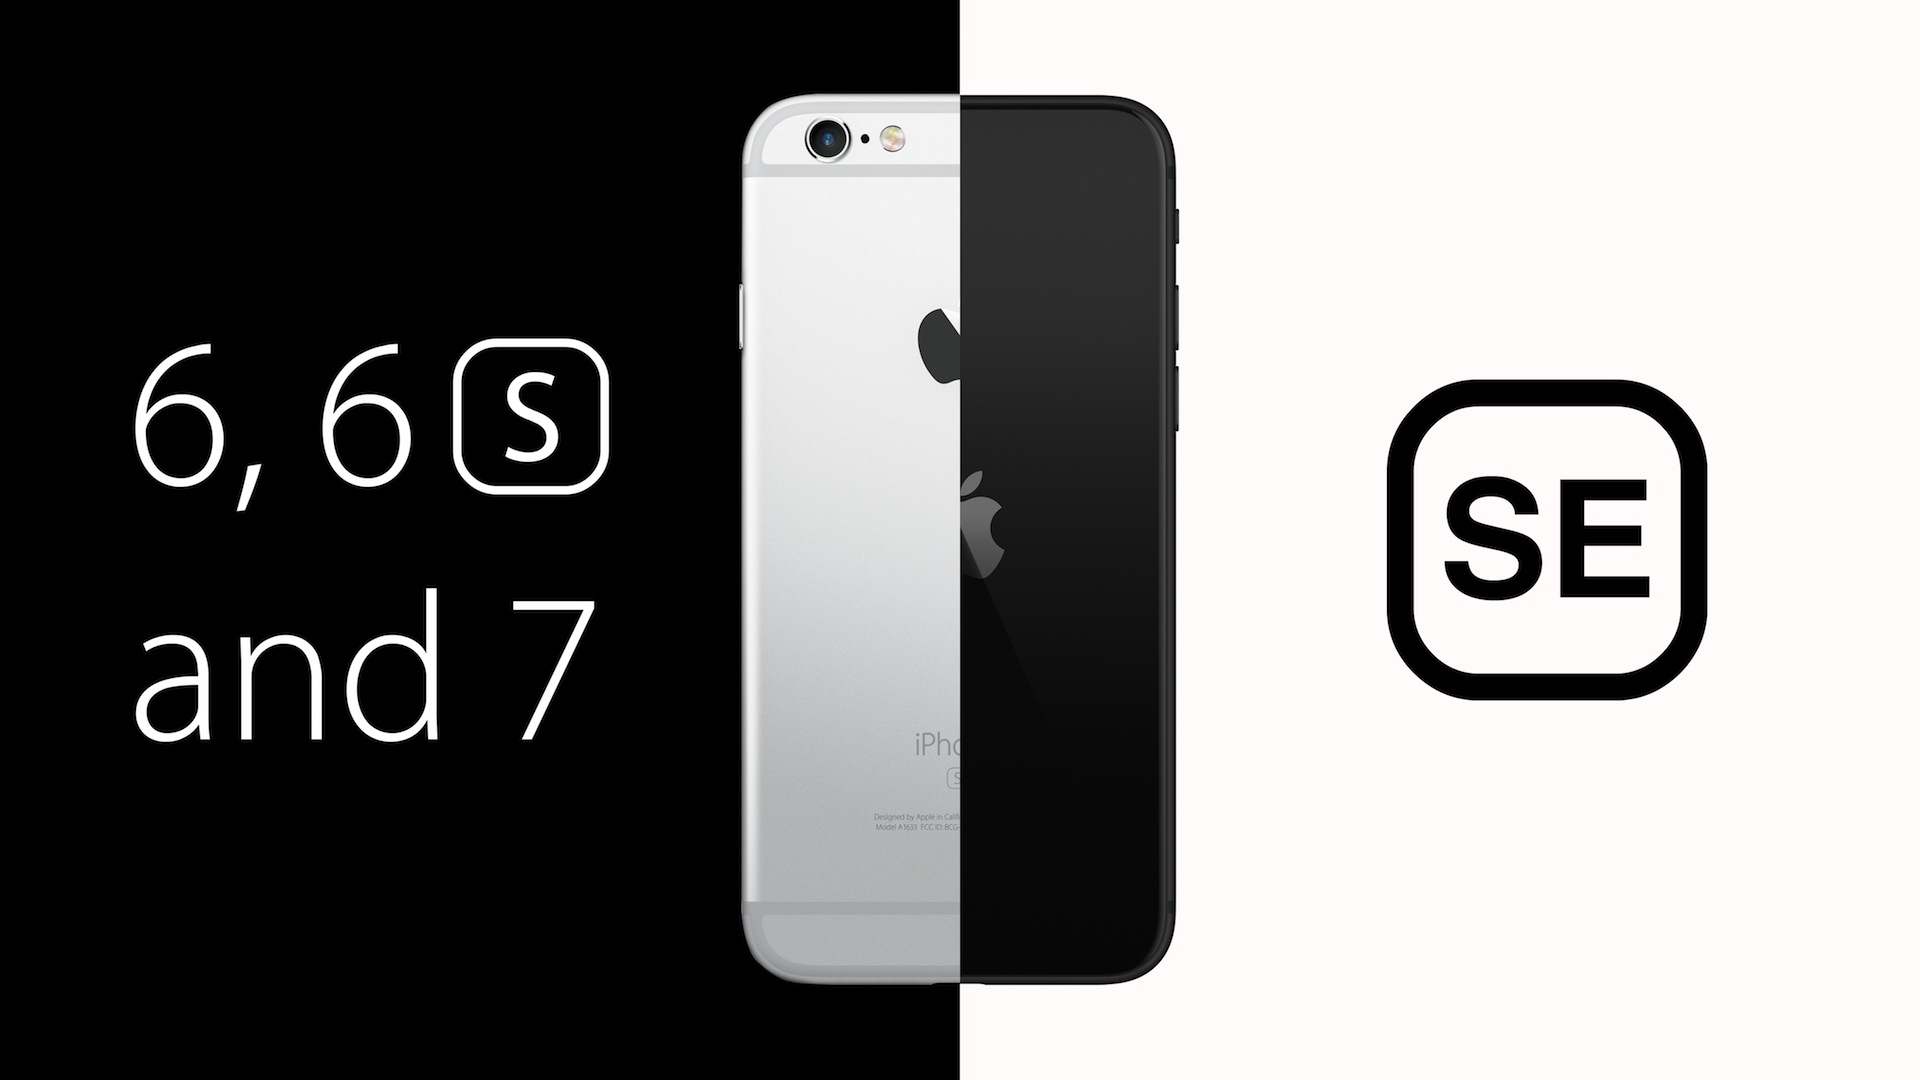 Yaprak Hattatlık gecikme  iPhone 6, 6s, & 7 vs. iPhone SE: Should You Upgrade? - MacRumors